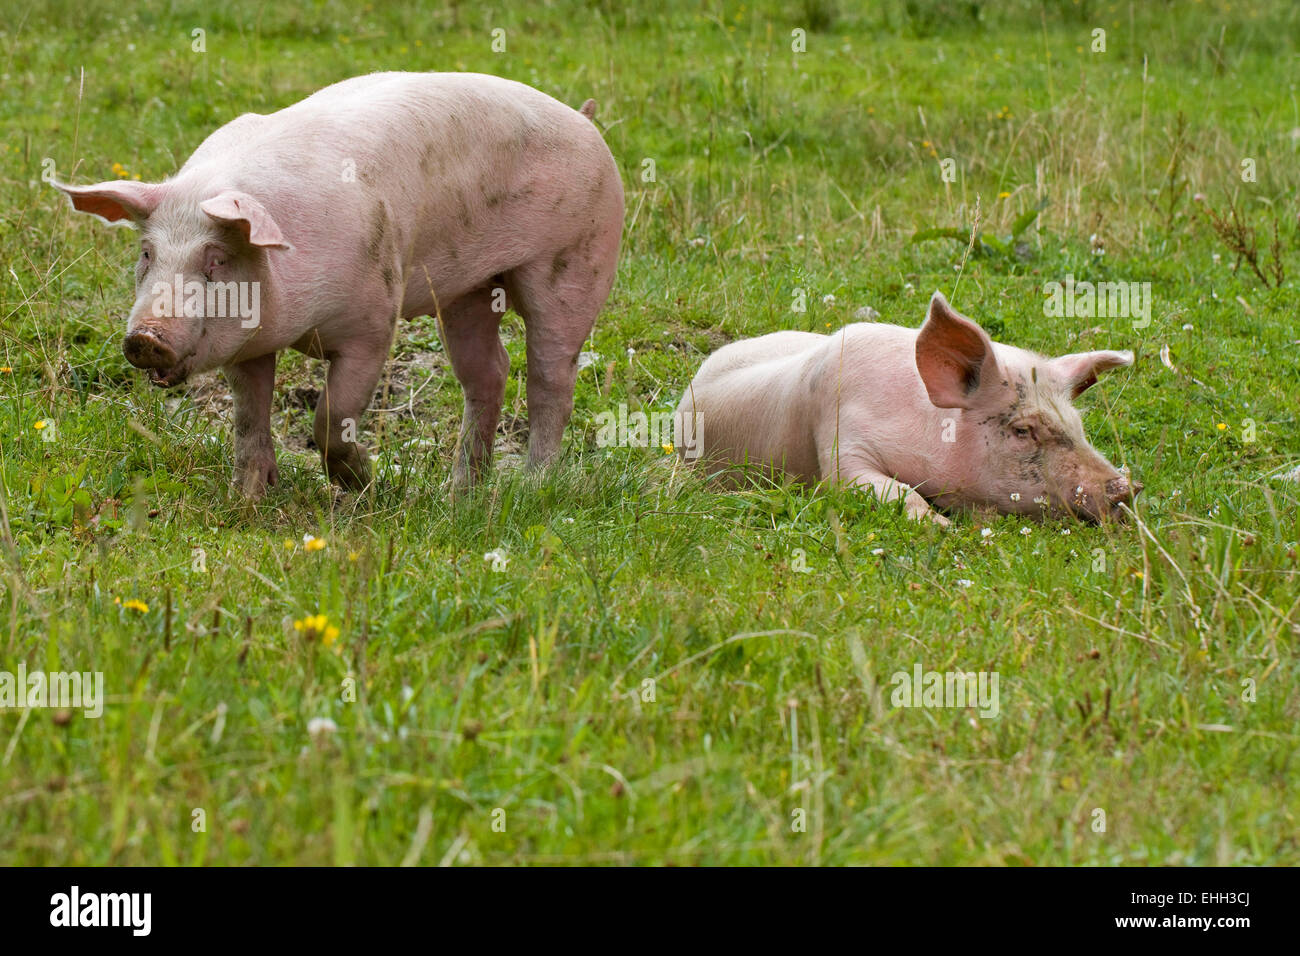 pigs Stock Photo